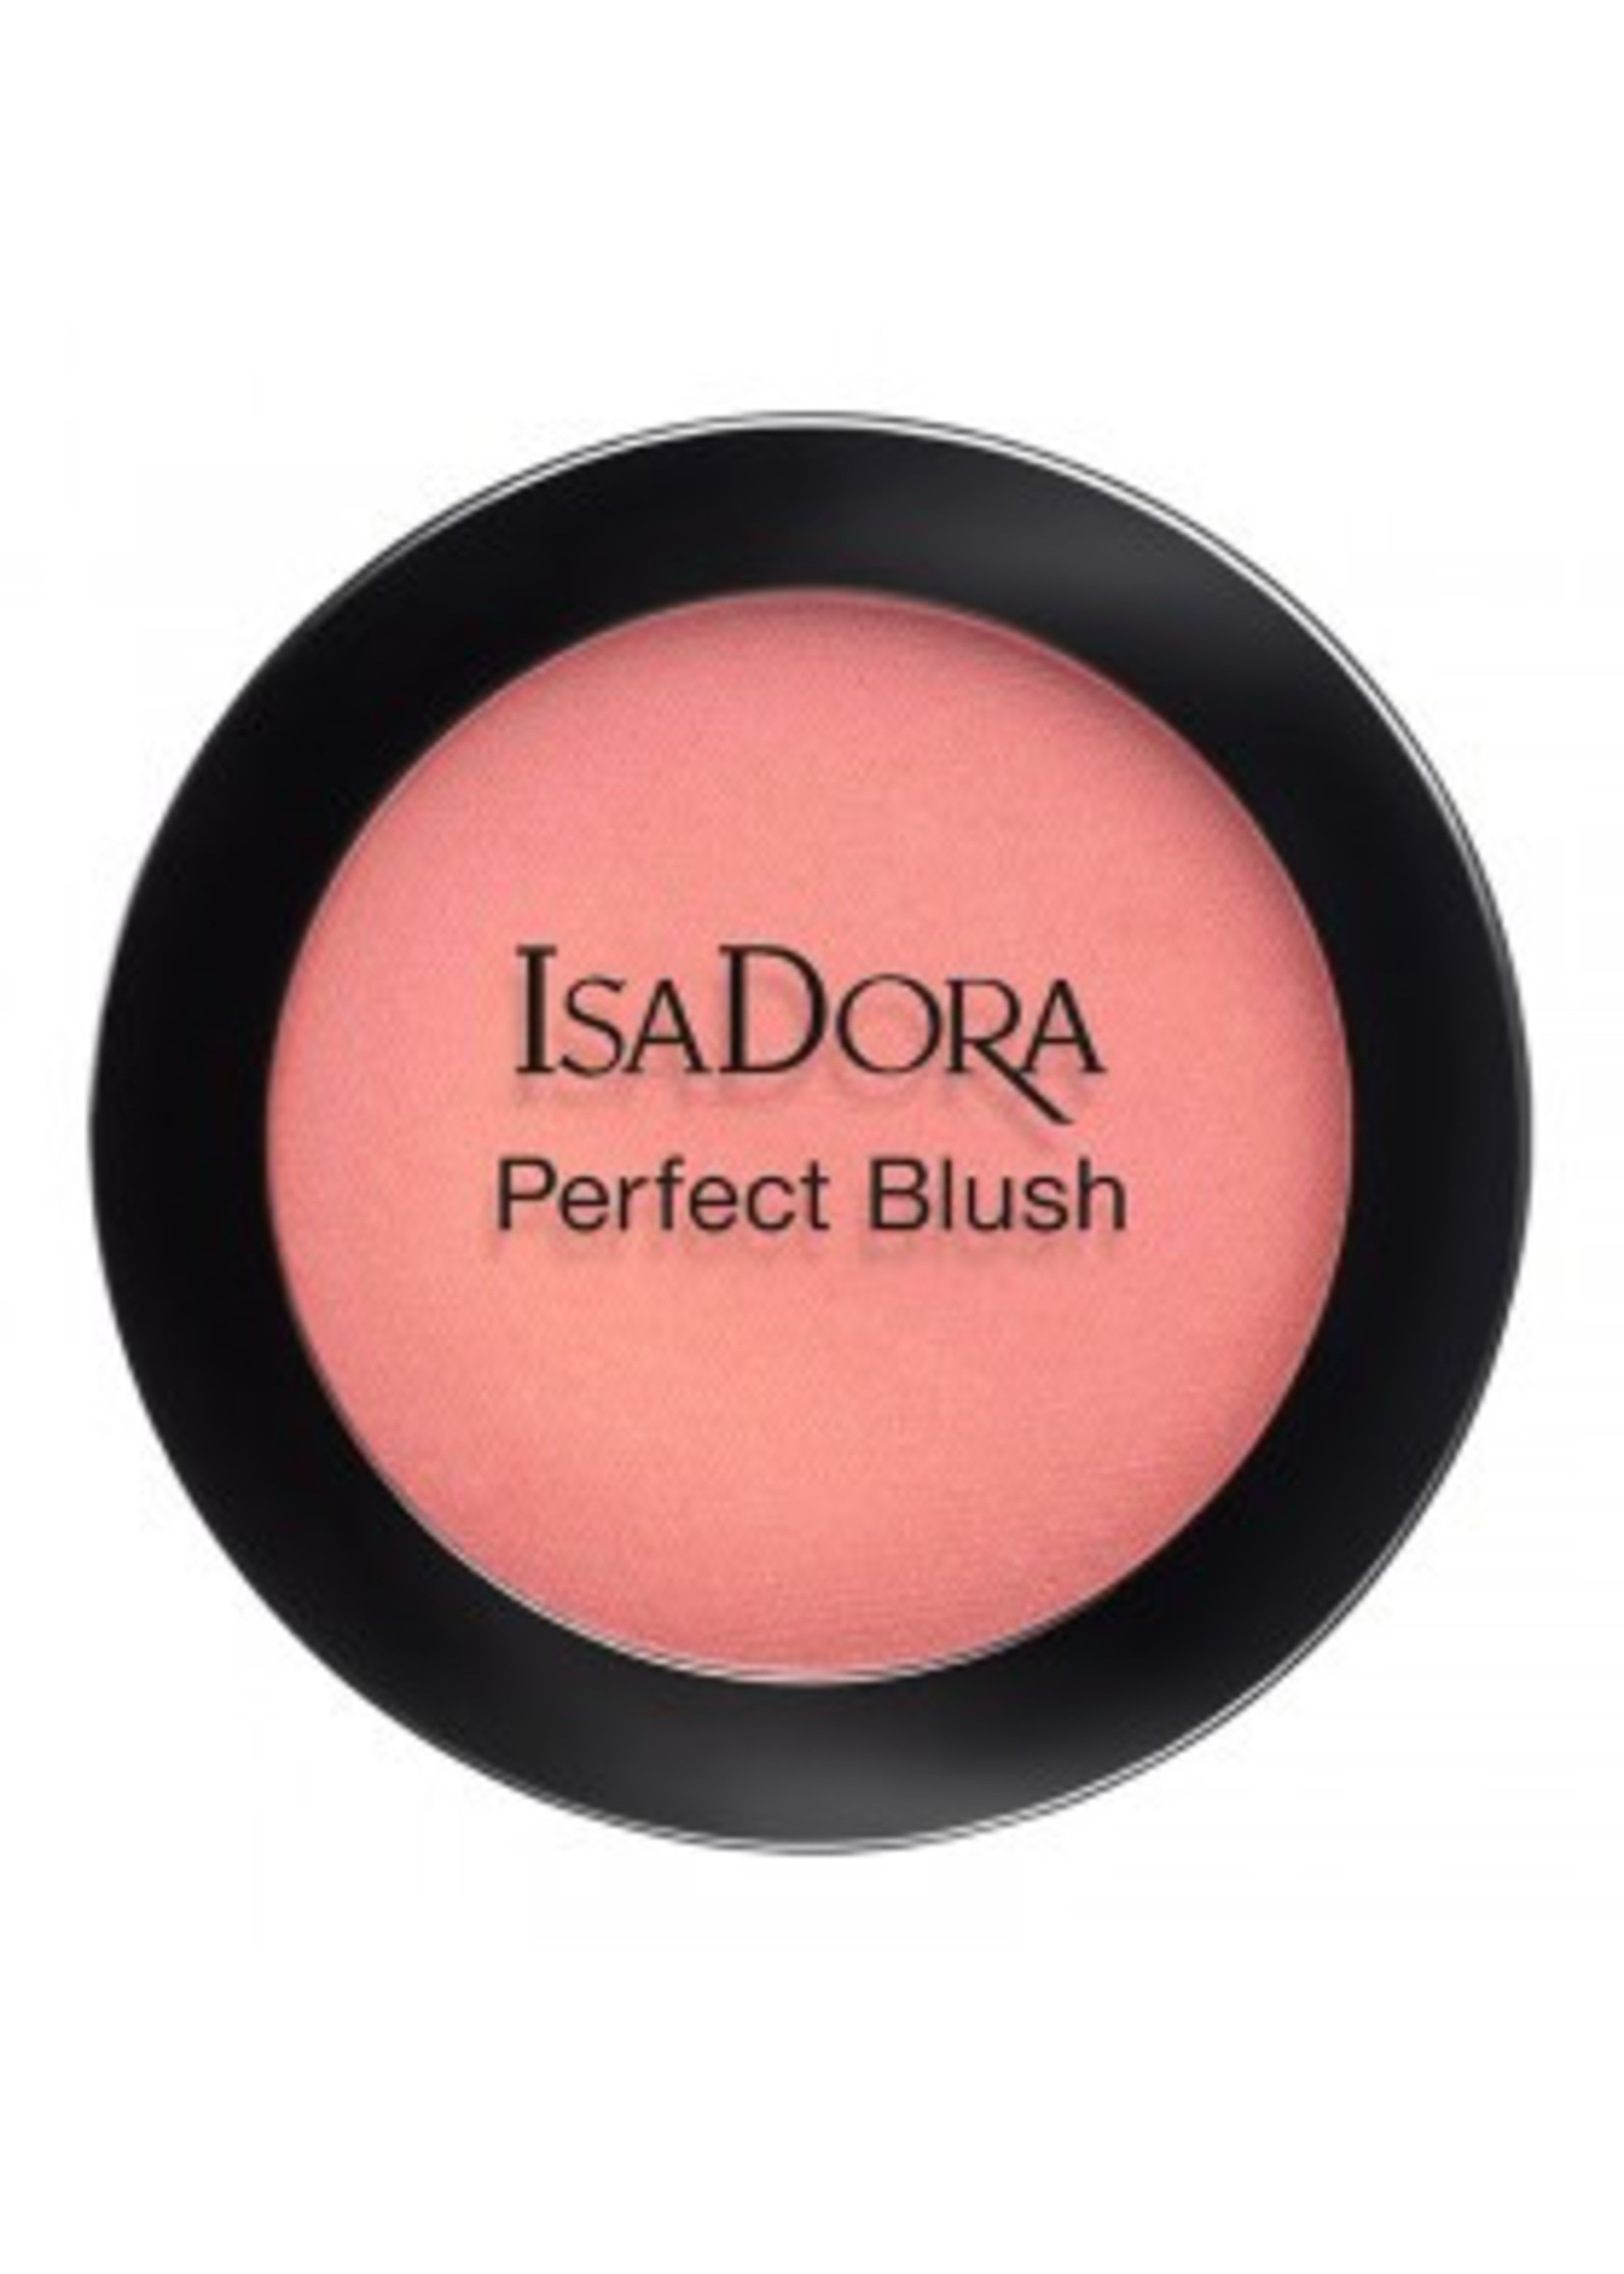 Isadora Perfect Blush Pink Glow 52 - IsaDora